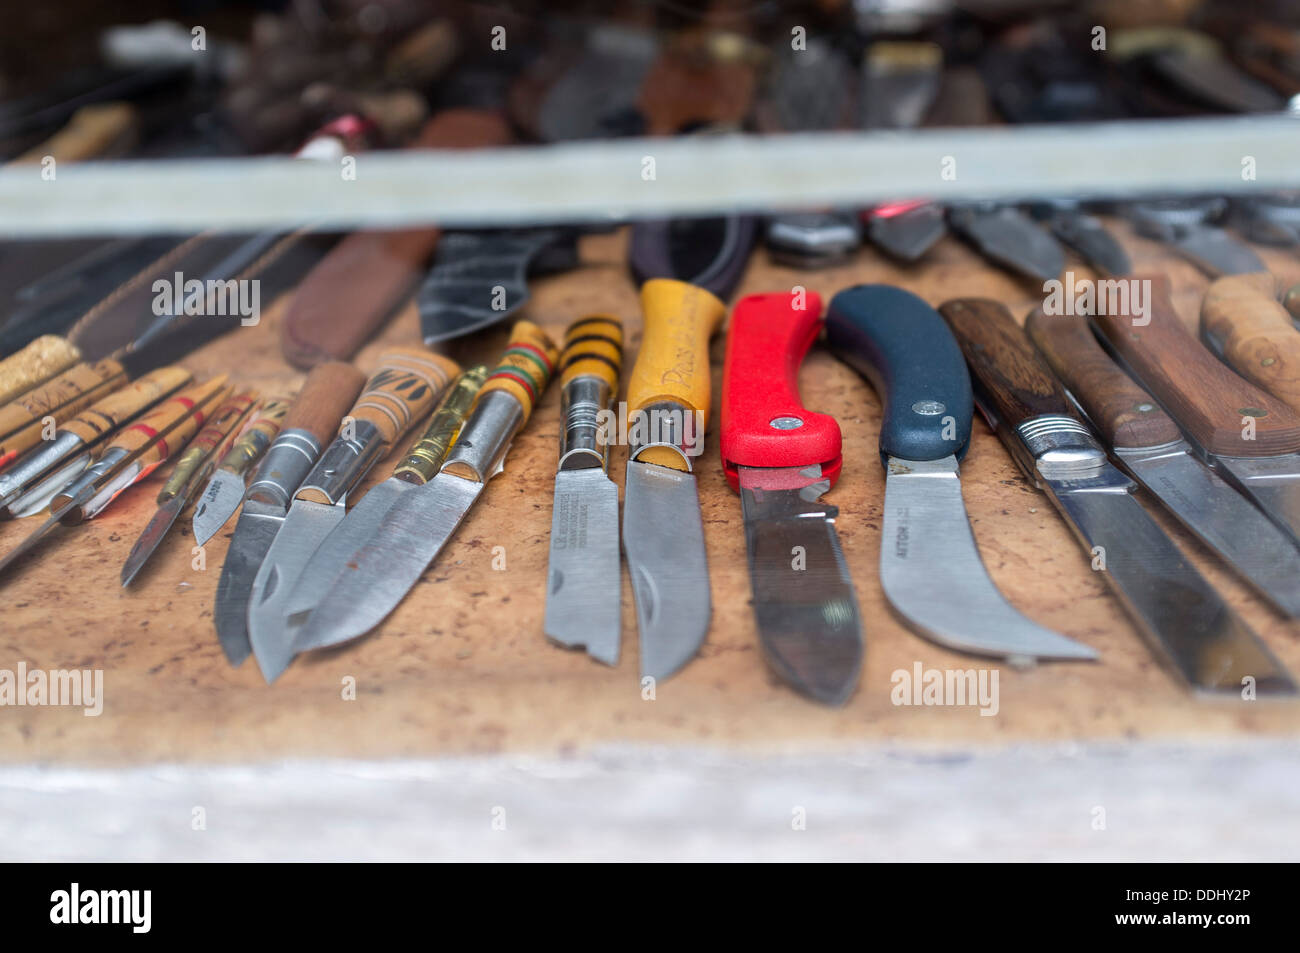 Madrid Mauler | Butcher Knife